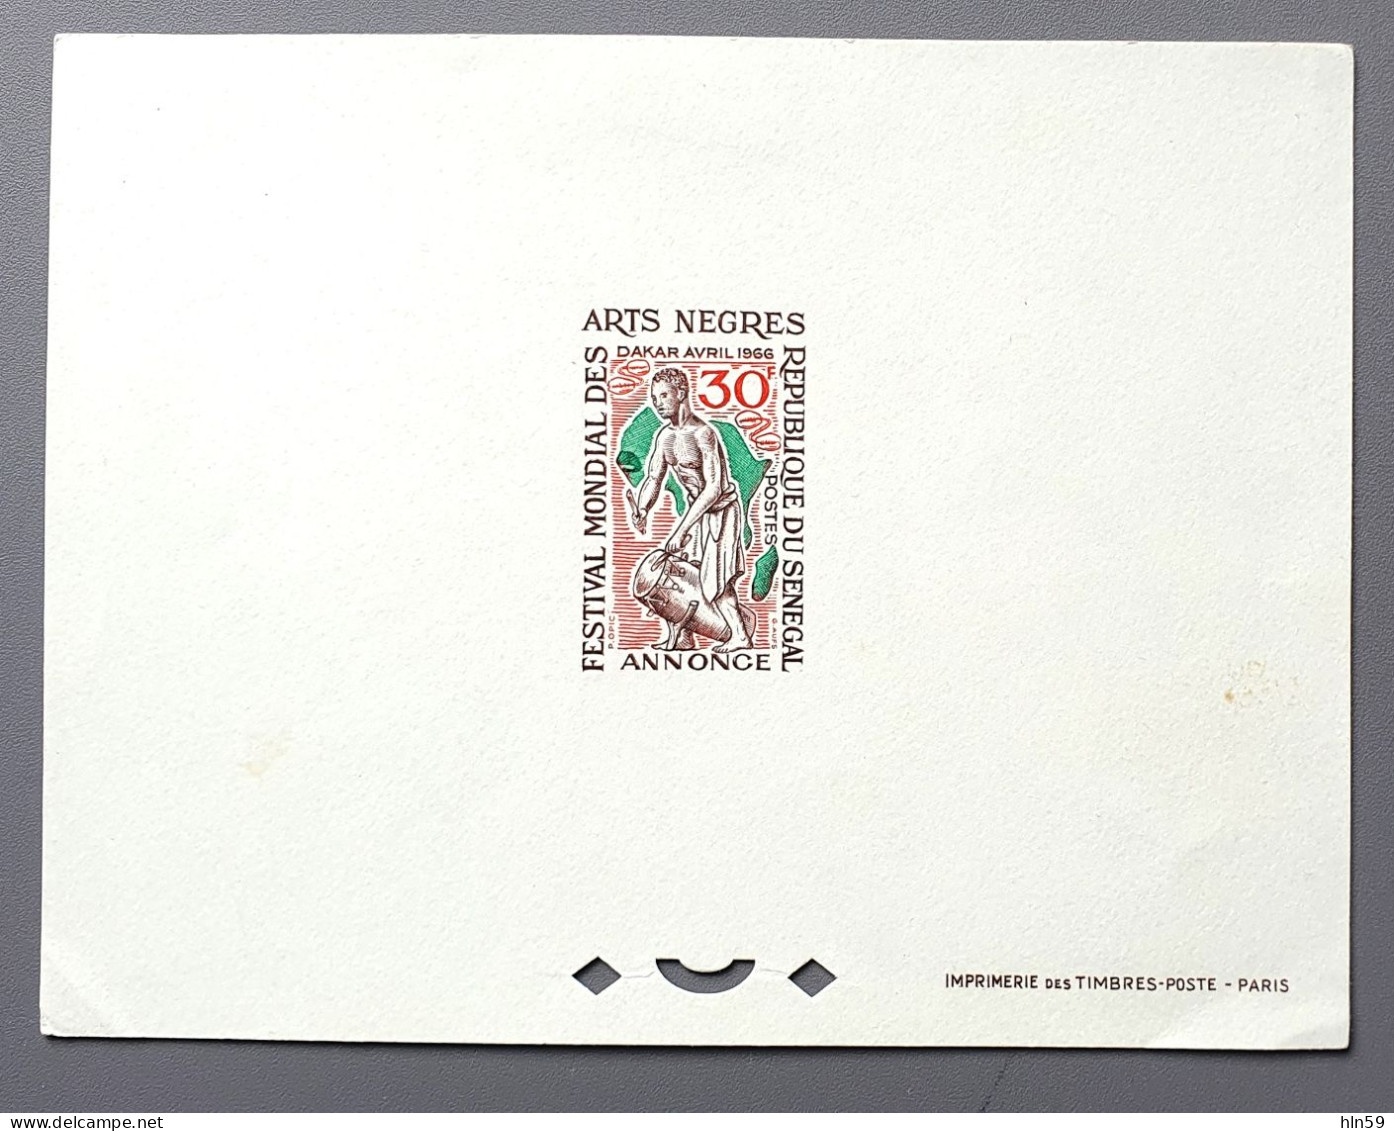 SENEGAL - 1966 - EPREUVE DE LUXE  PROOF CARD - FESTIVAL MONDIAL DES ARTS NEGRES -  YT 276 - Sénégal (1960-...)